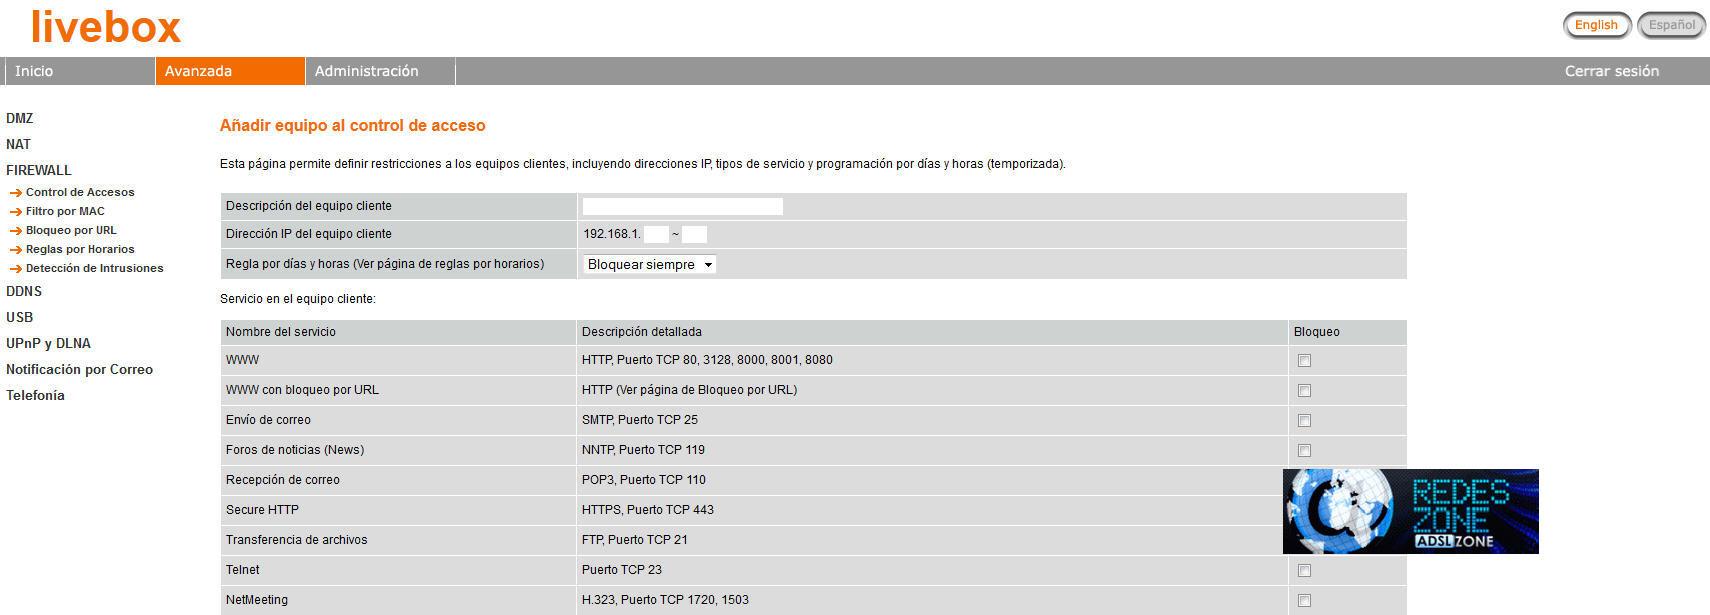 Nuevo router multimedia Livebox: Manual de configuración